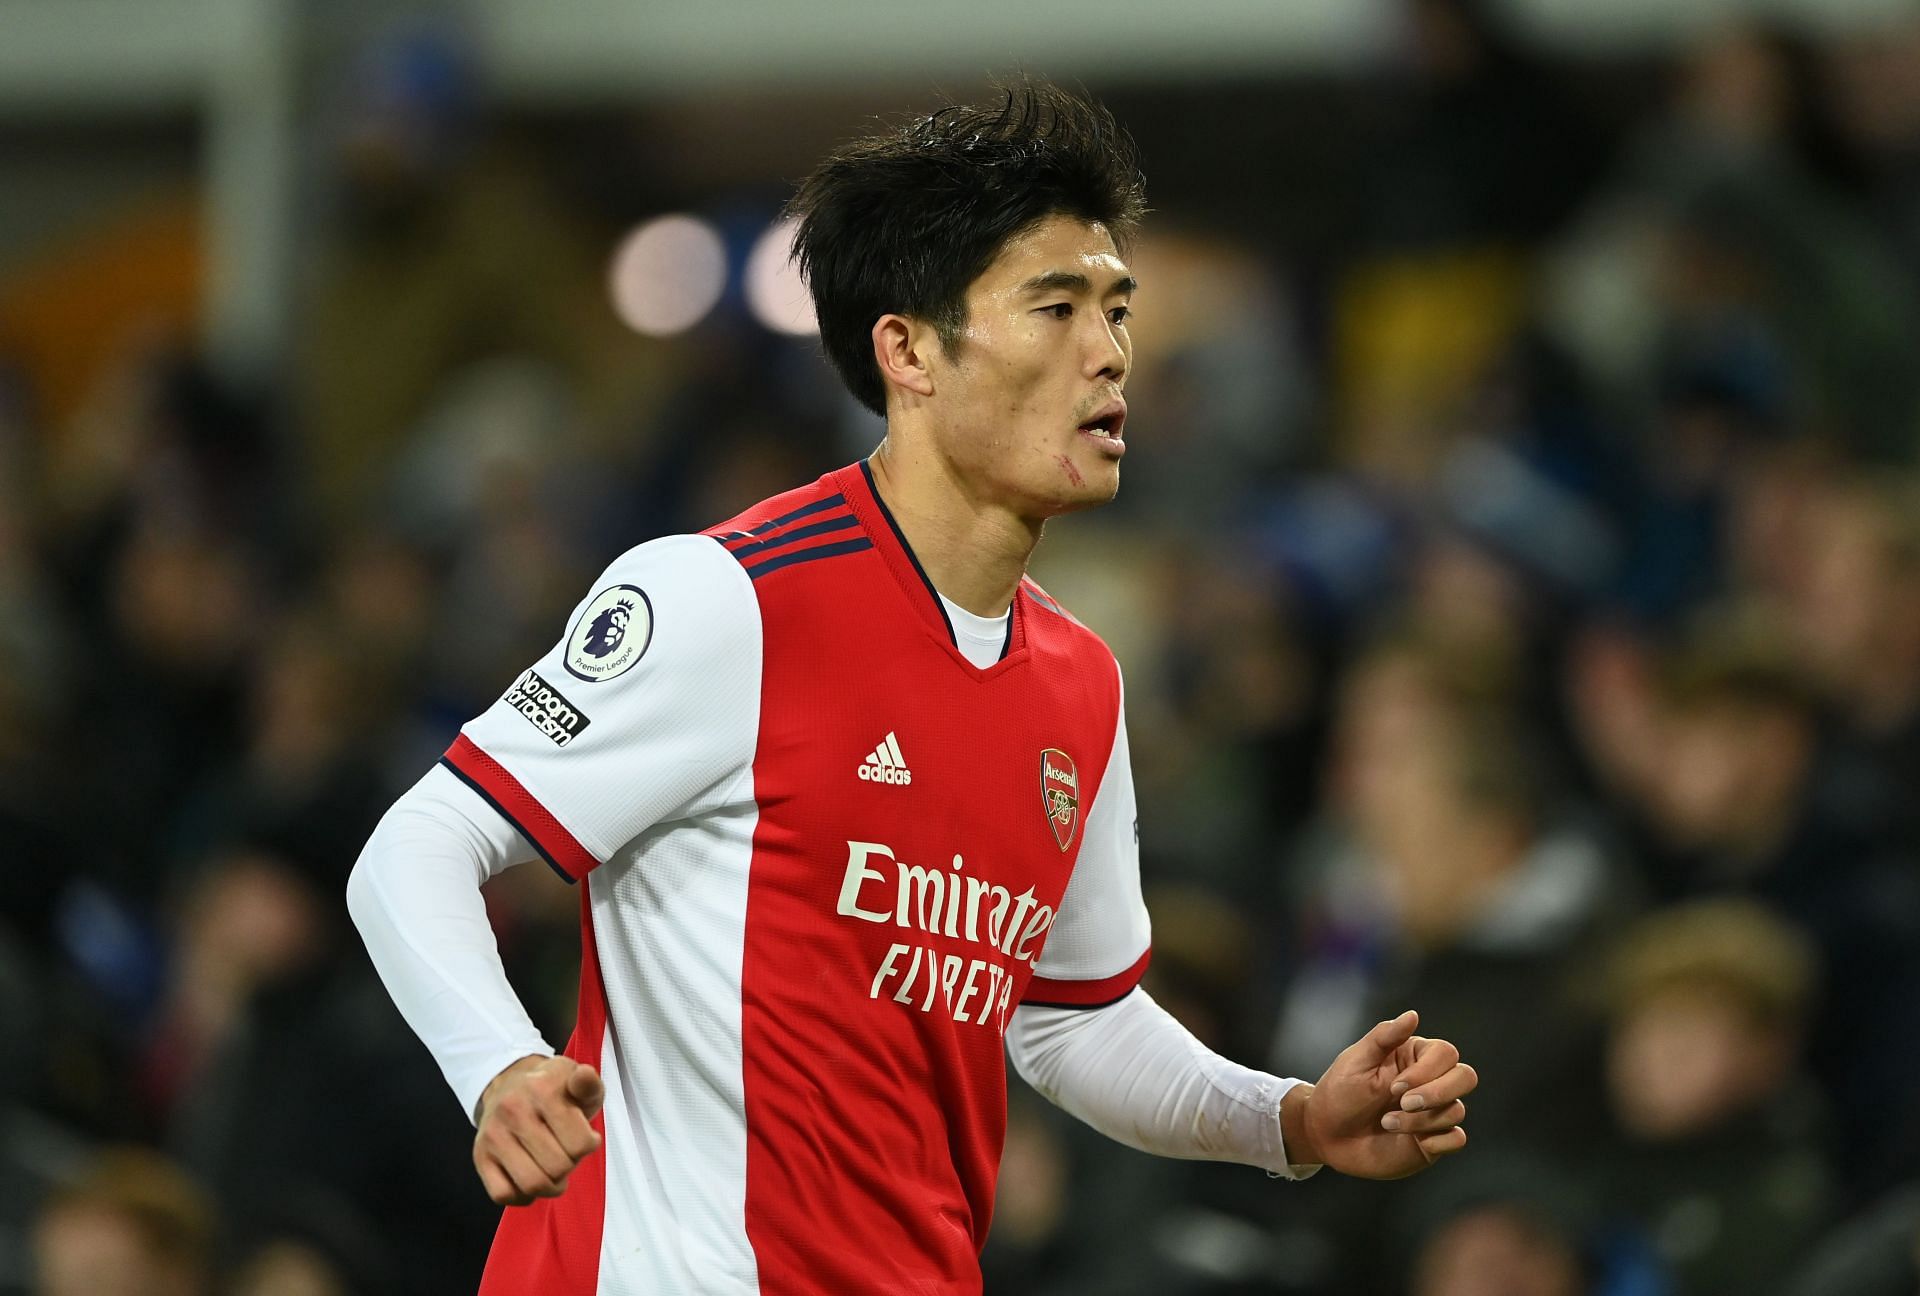 Tomiyasu in action against Everton